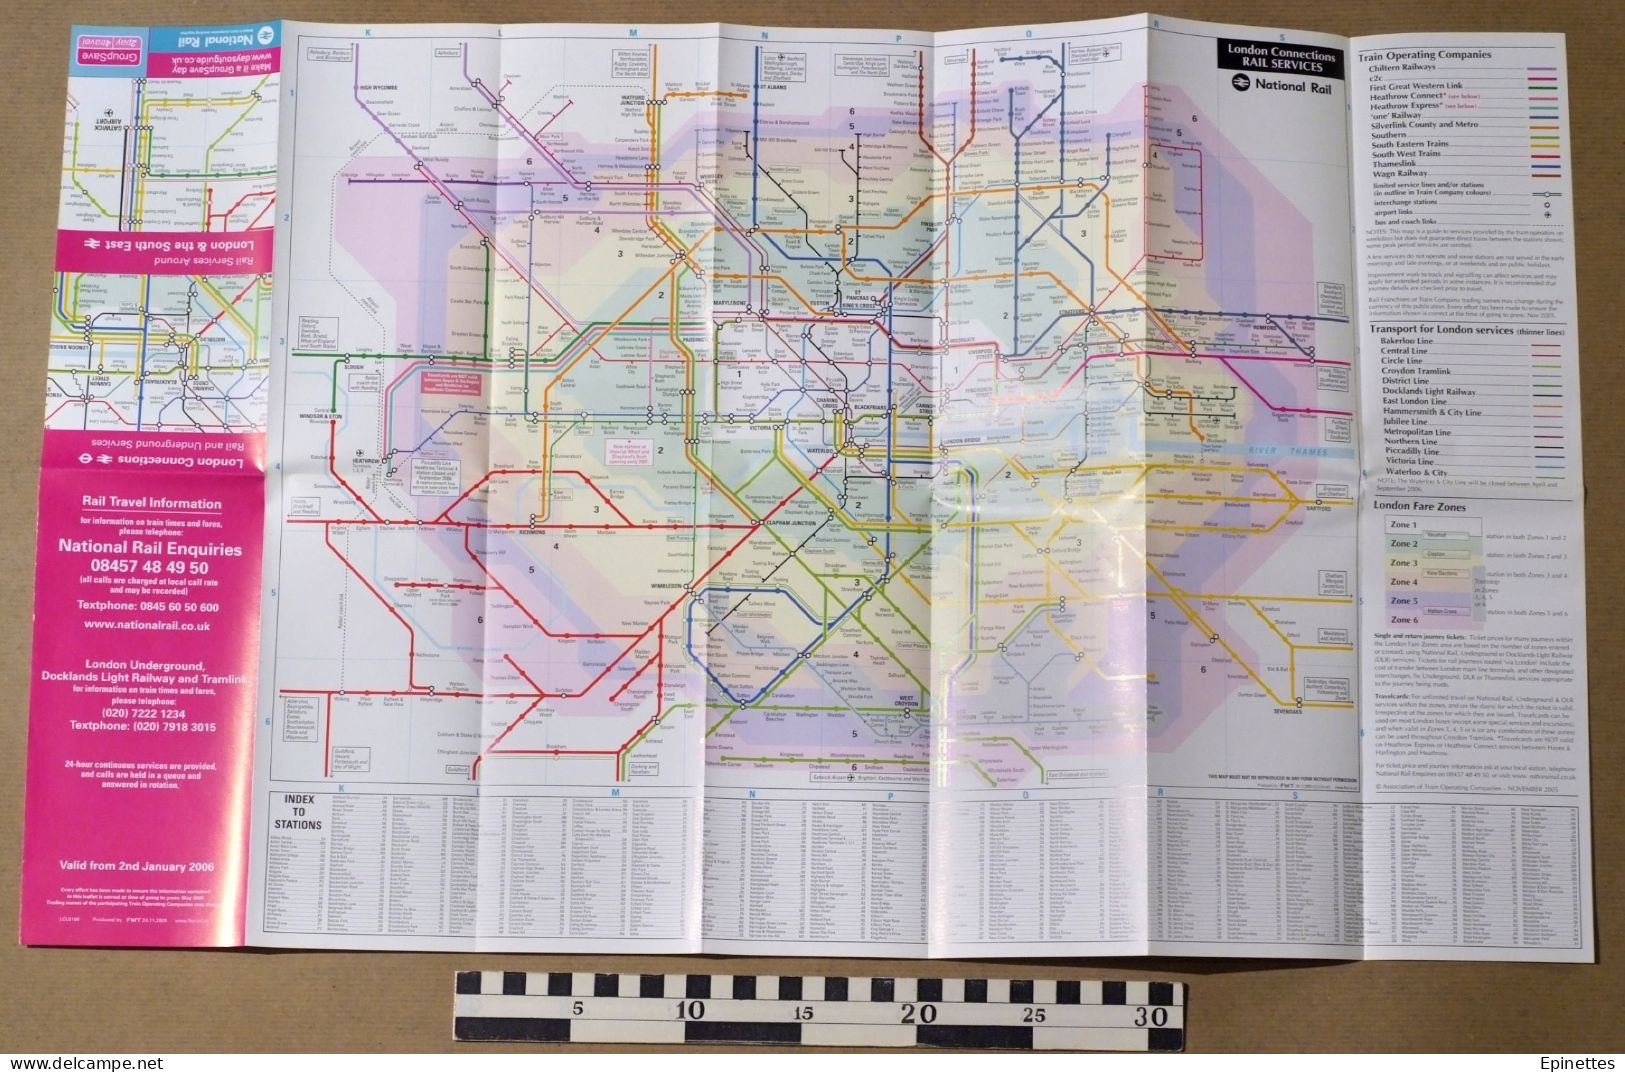 Plan Dépliant, Métro Londres + Transports Régionaux 2006 Rail & Underground Services, Connections, London & South-East - Europe